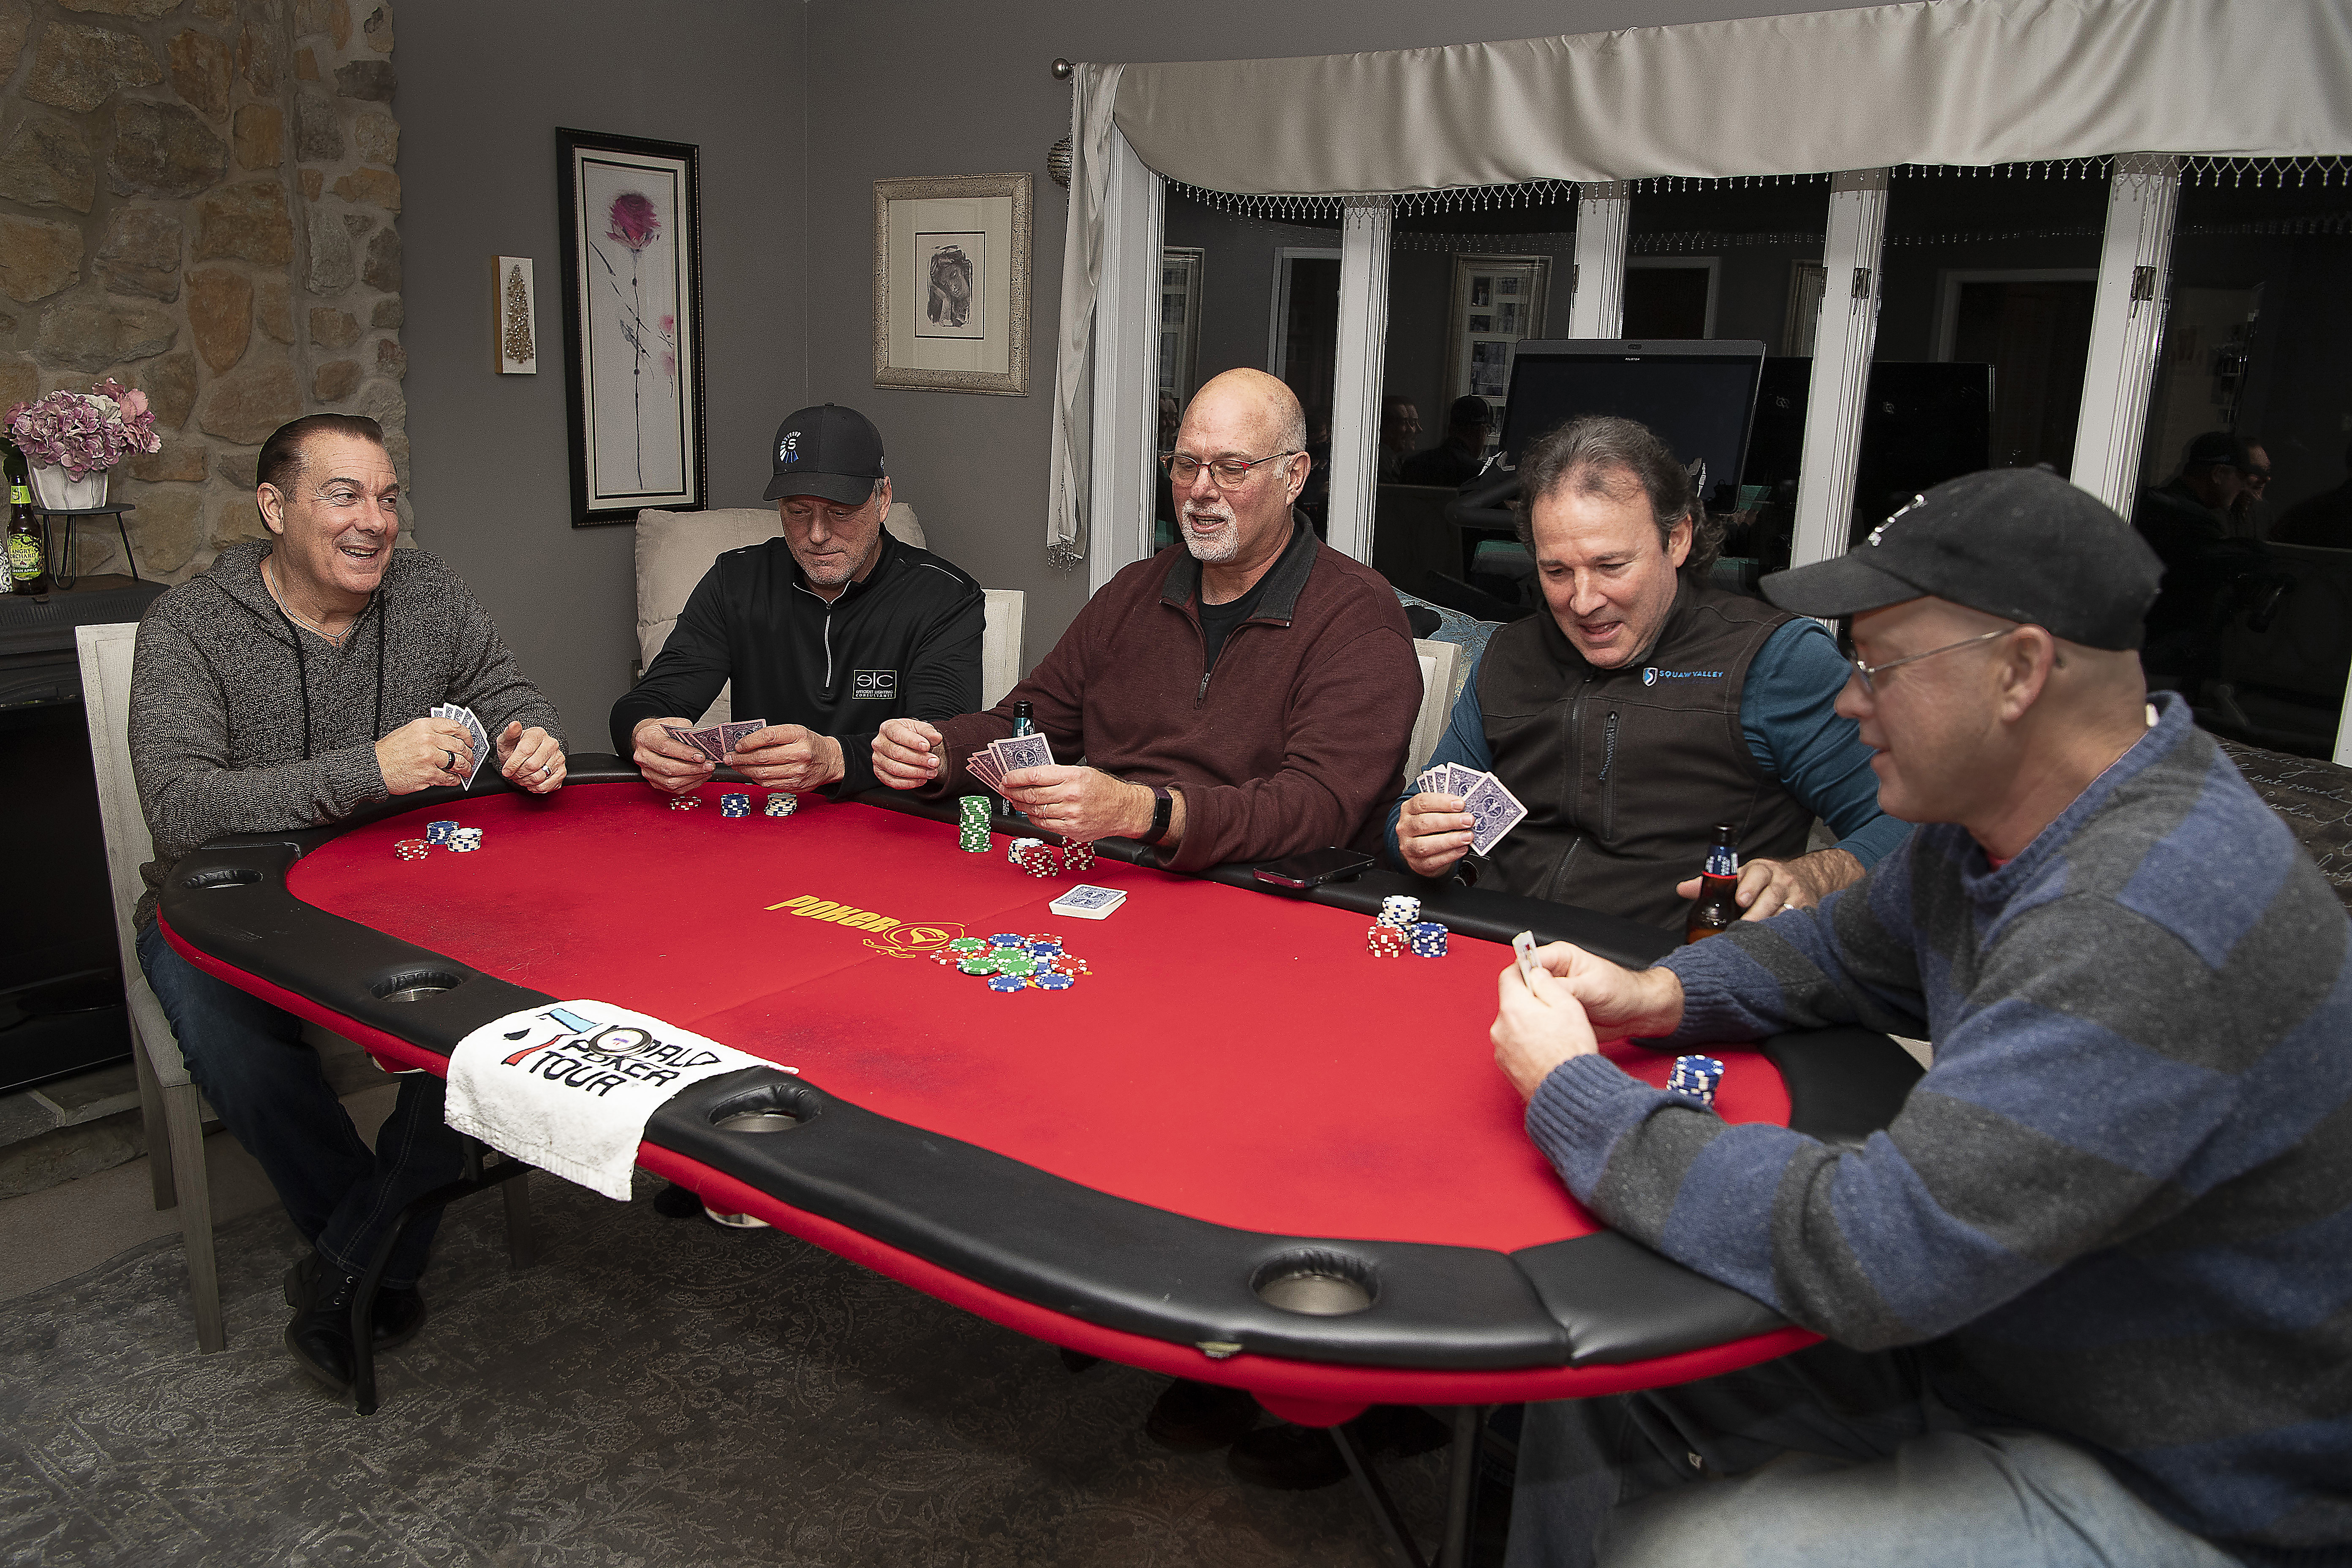 Host a poker night on 888poker!